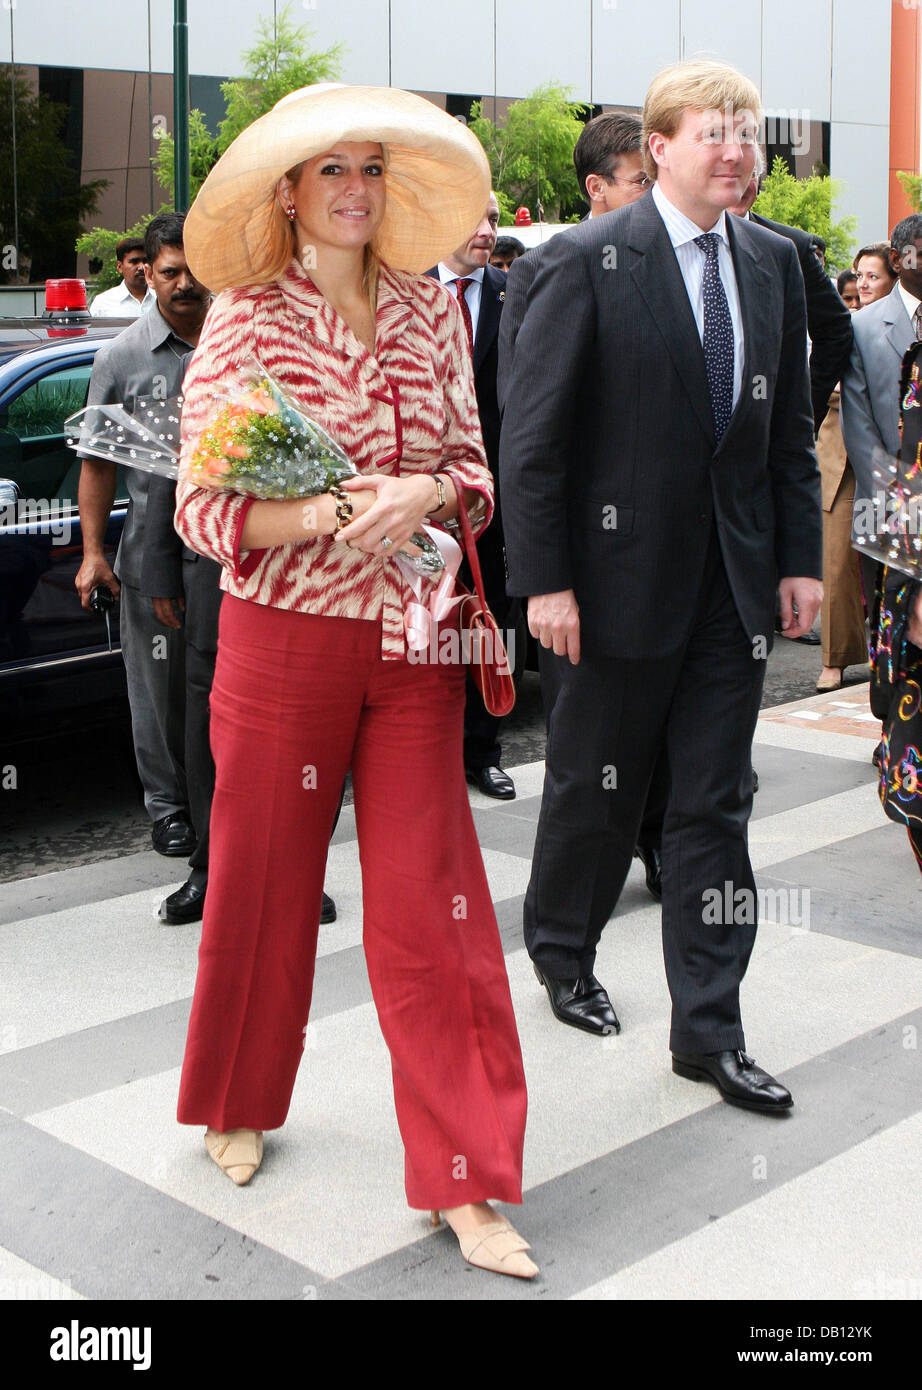 La Couronne néerlandaise Prince Willem Alexander (R) et son épouse la princesse Maxima arrivent dans les locaux de l'entreprise d'Infosys à Bangalore Inde, 26 octobre 2007. La famille royale néerlandaise paie une visite d'Etat de quatre jours en Inde. Photo : Albert Nieboer (Pays-Bas) Banque D'Images